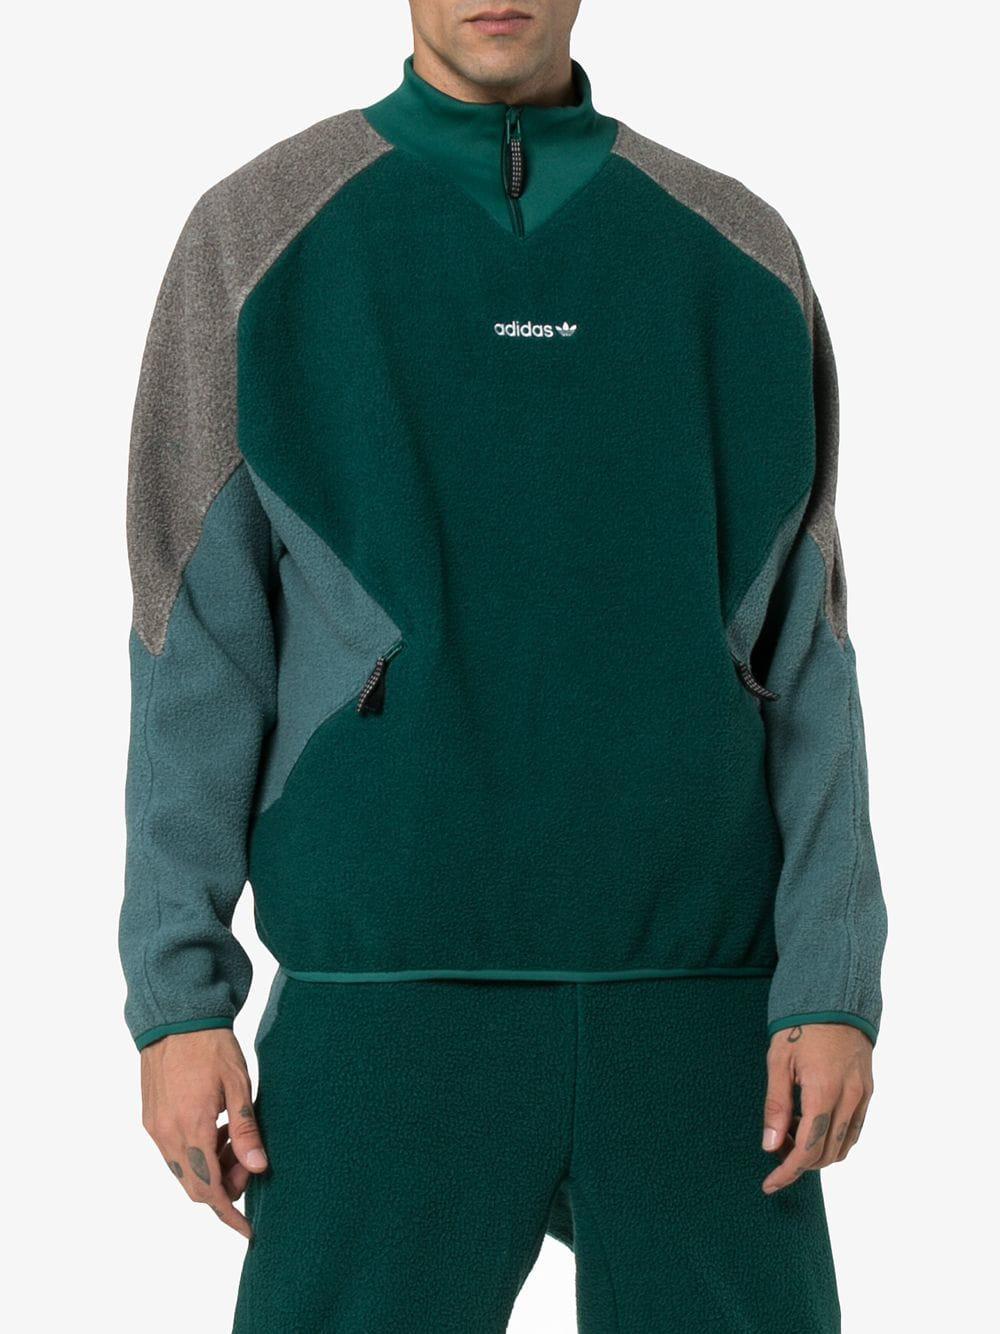 adidas originals eqt polar fleece jacket in green